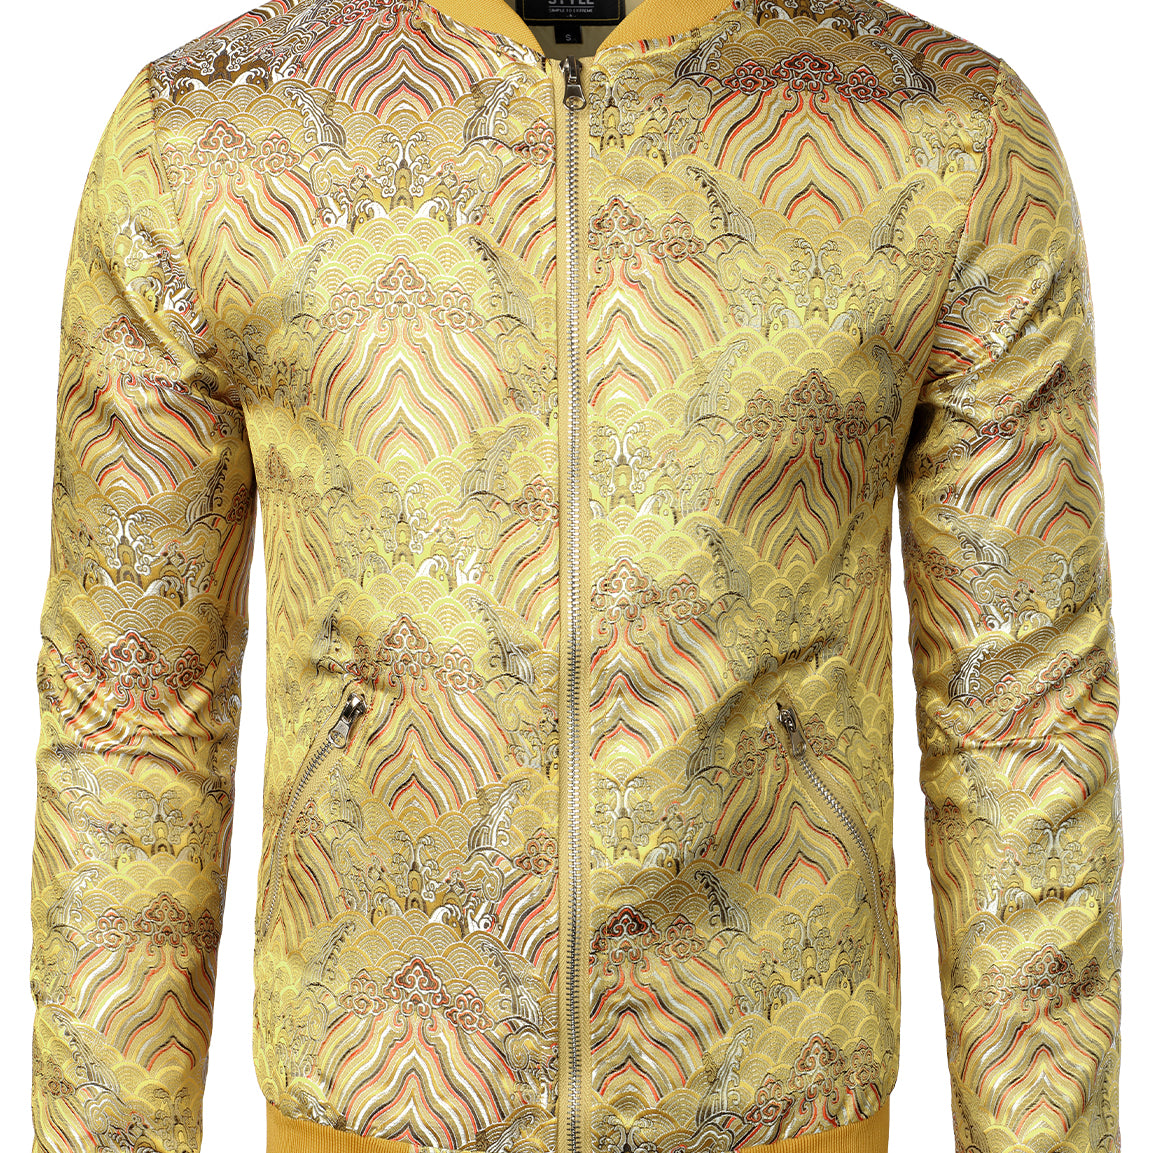 Men's Vintage Embroidered Satin Flight Bomber Jacket Coat